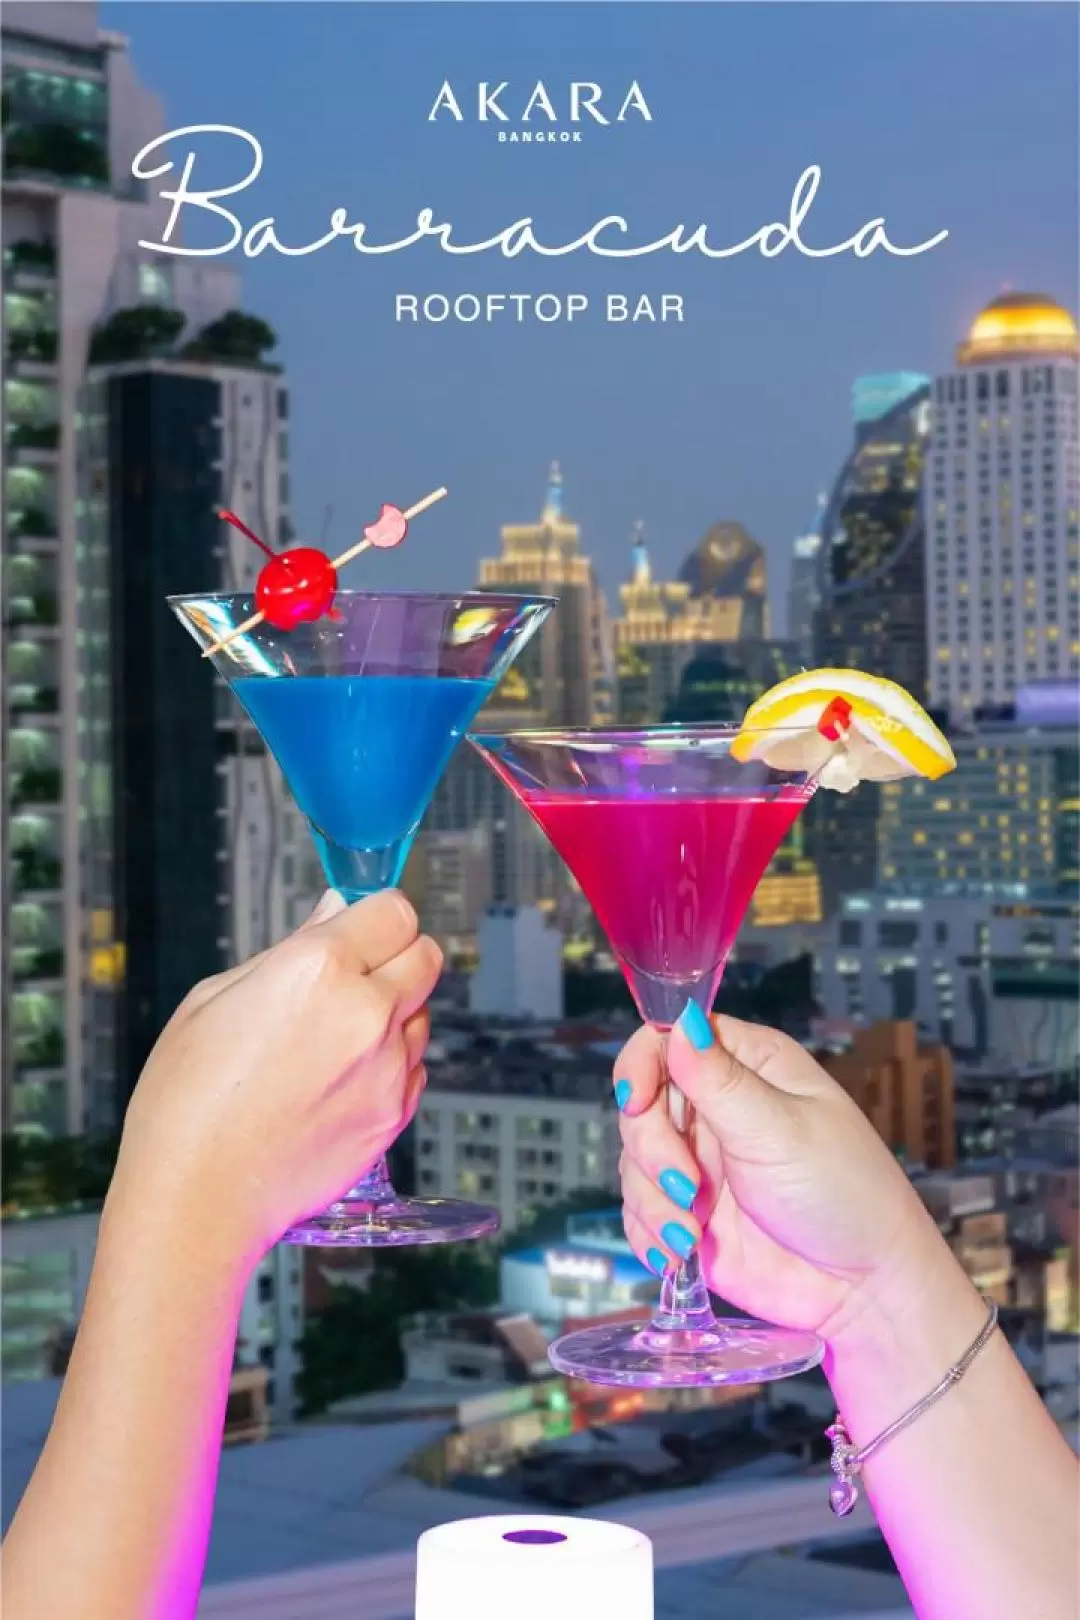 Barracuda Rooftop Bar - 曼谷阿卡拉酒店